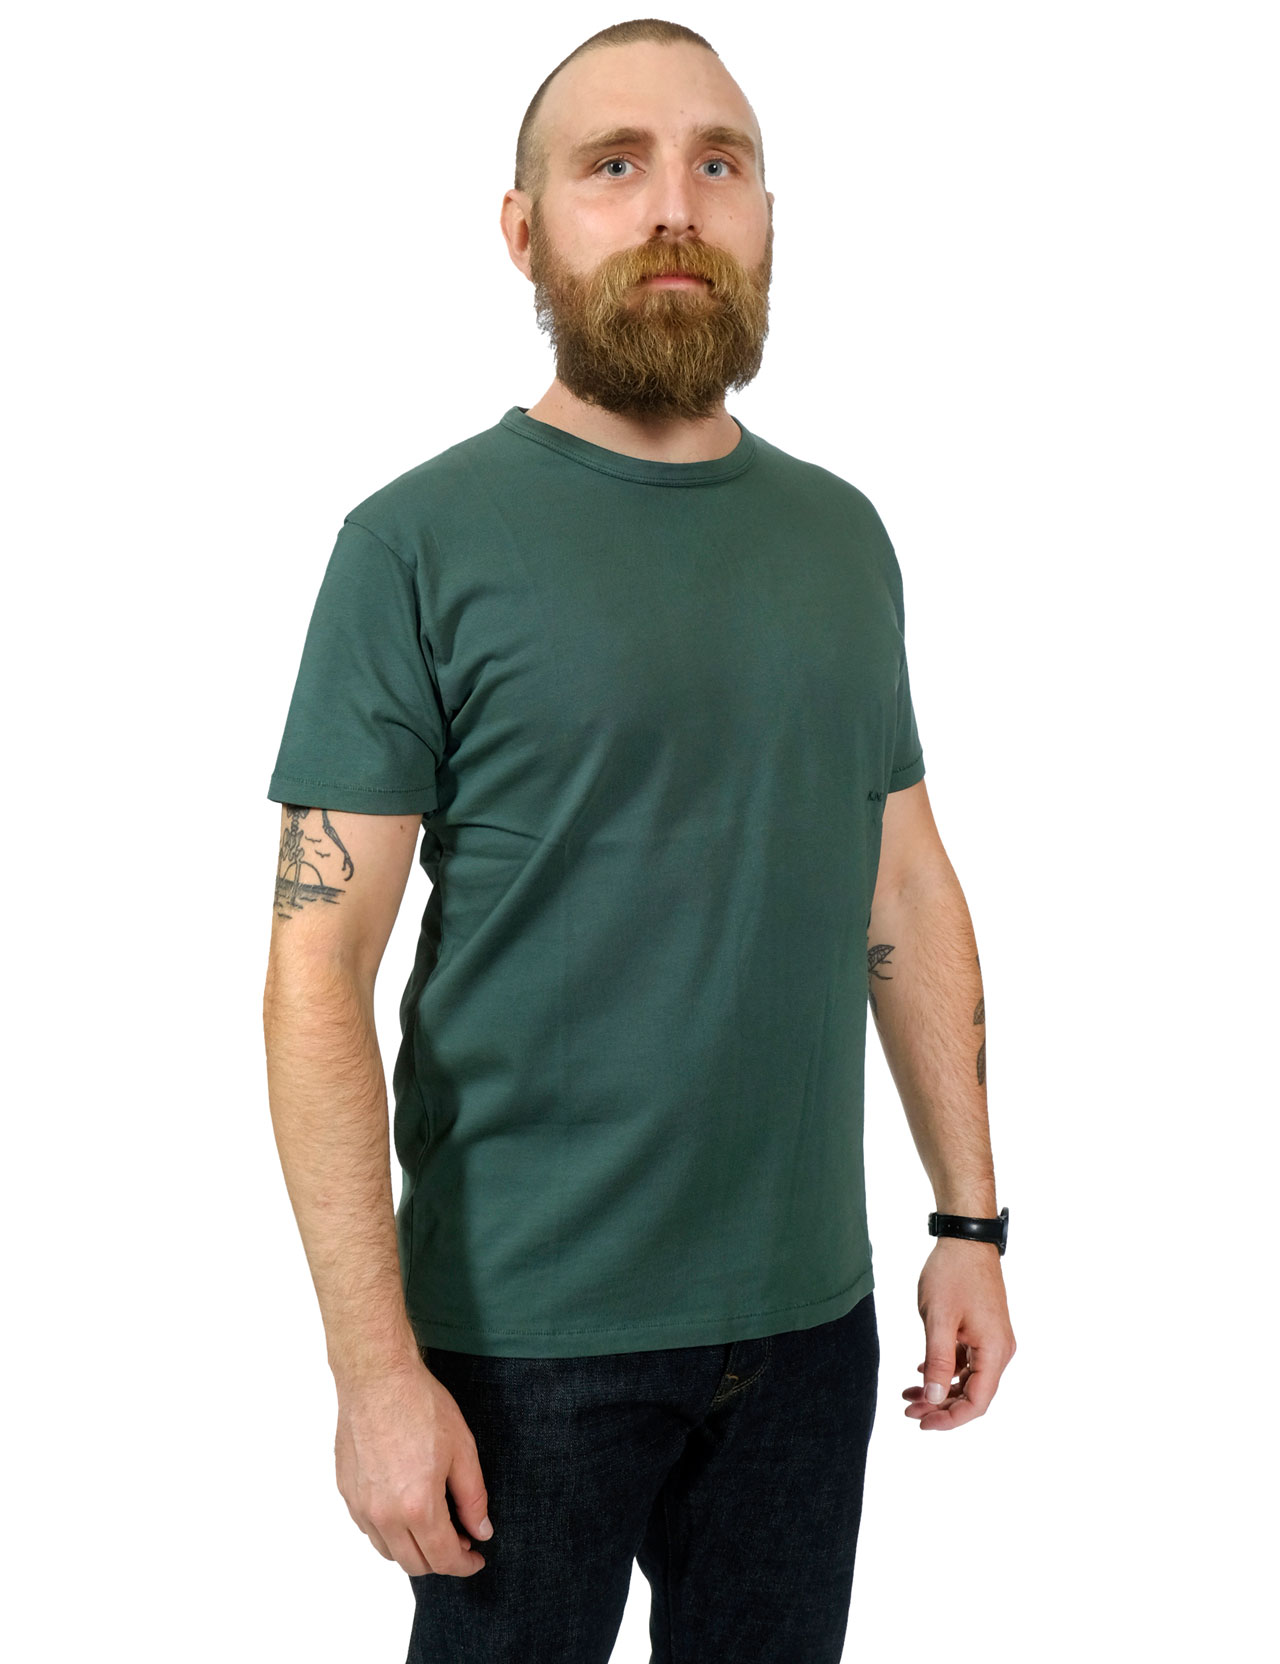 Knickerbocker---The-T-Shirt---Knickerbocker-Green-99-2